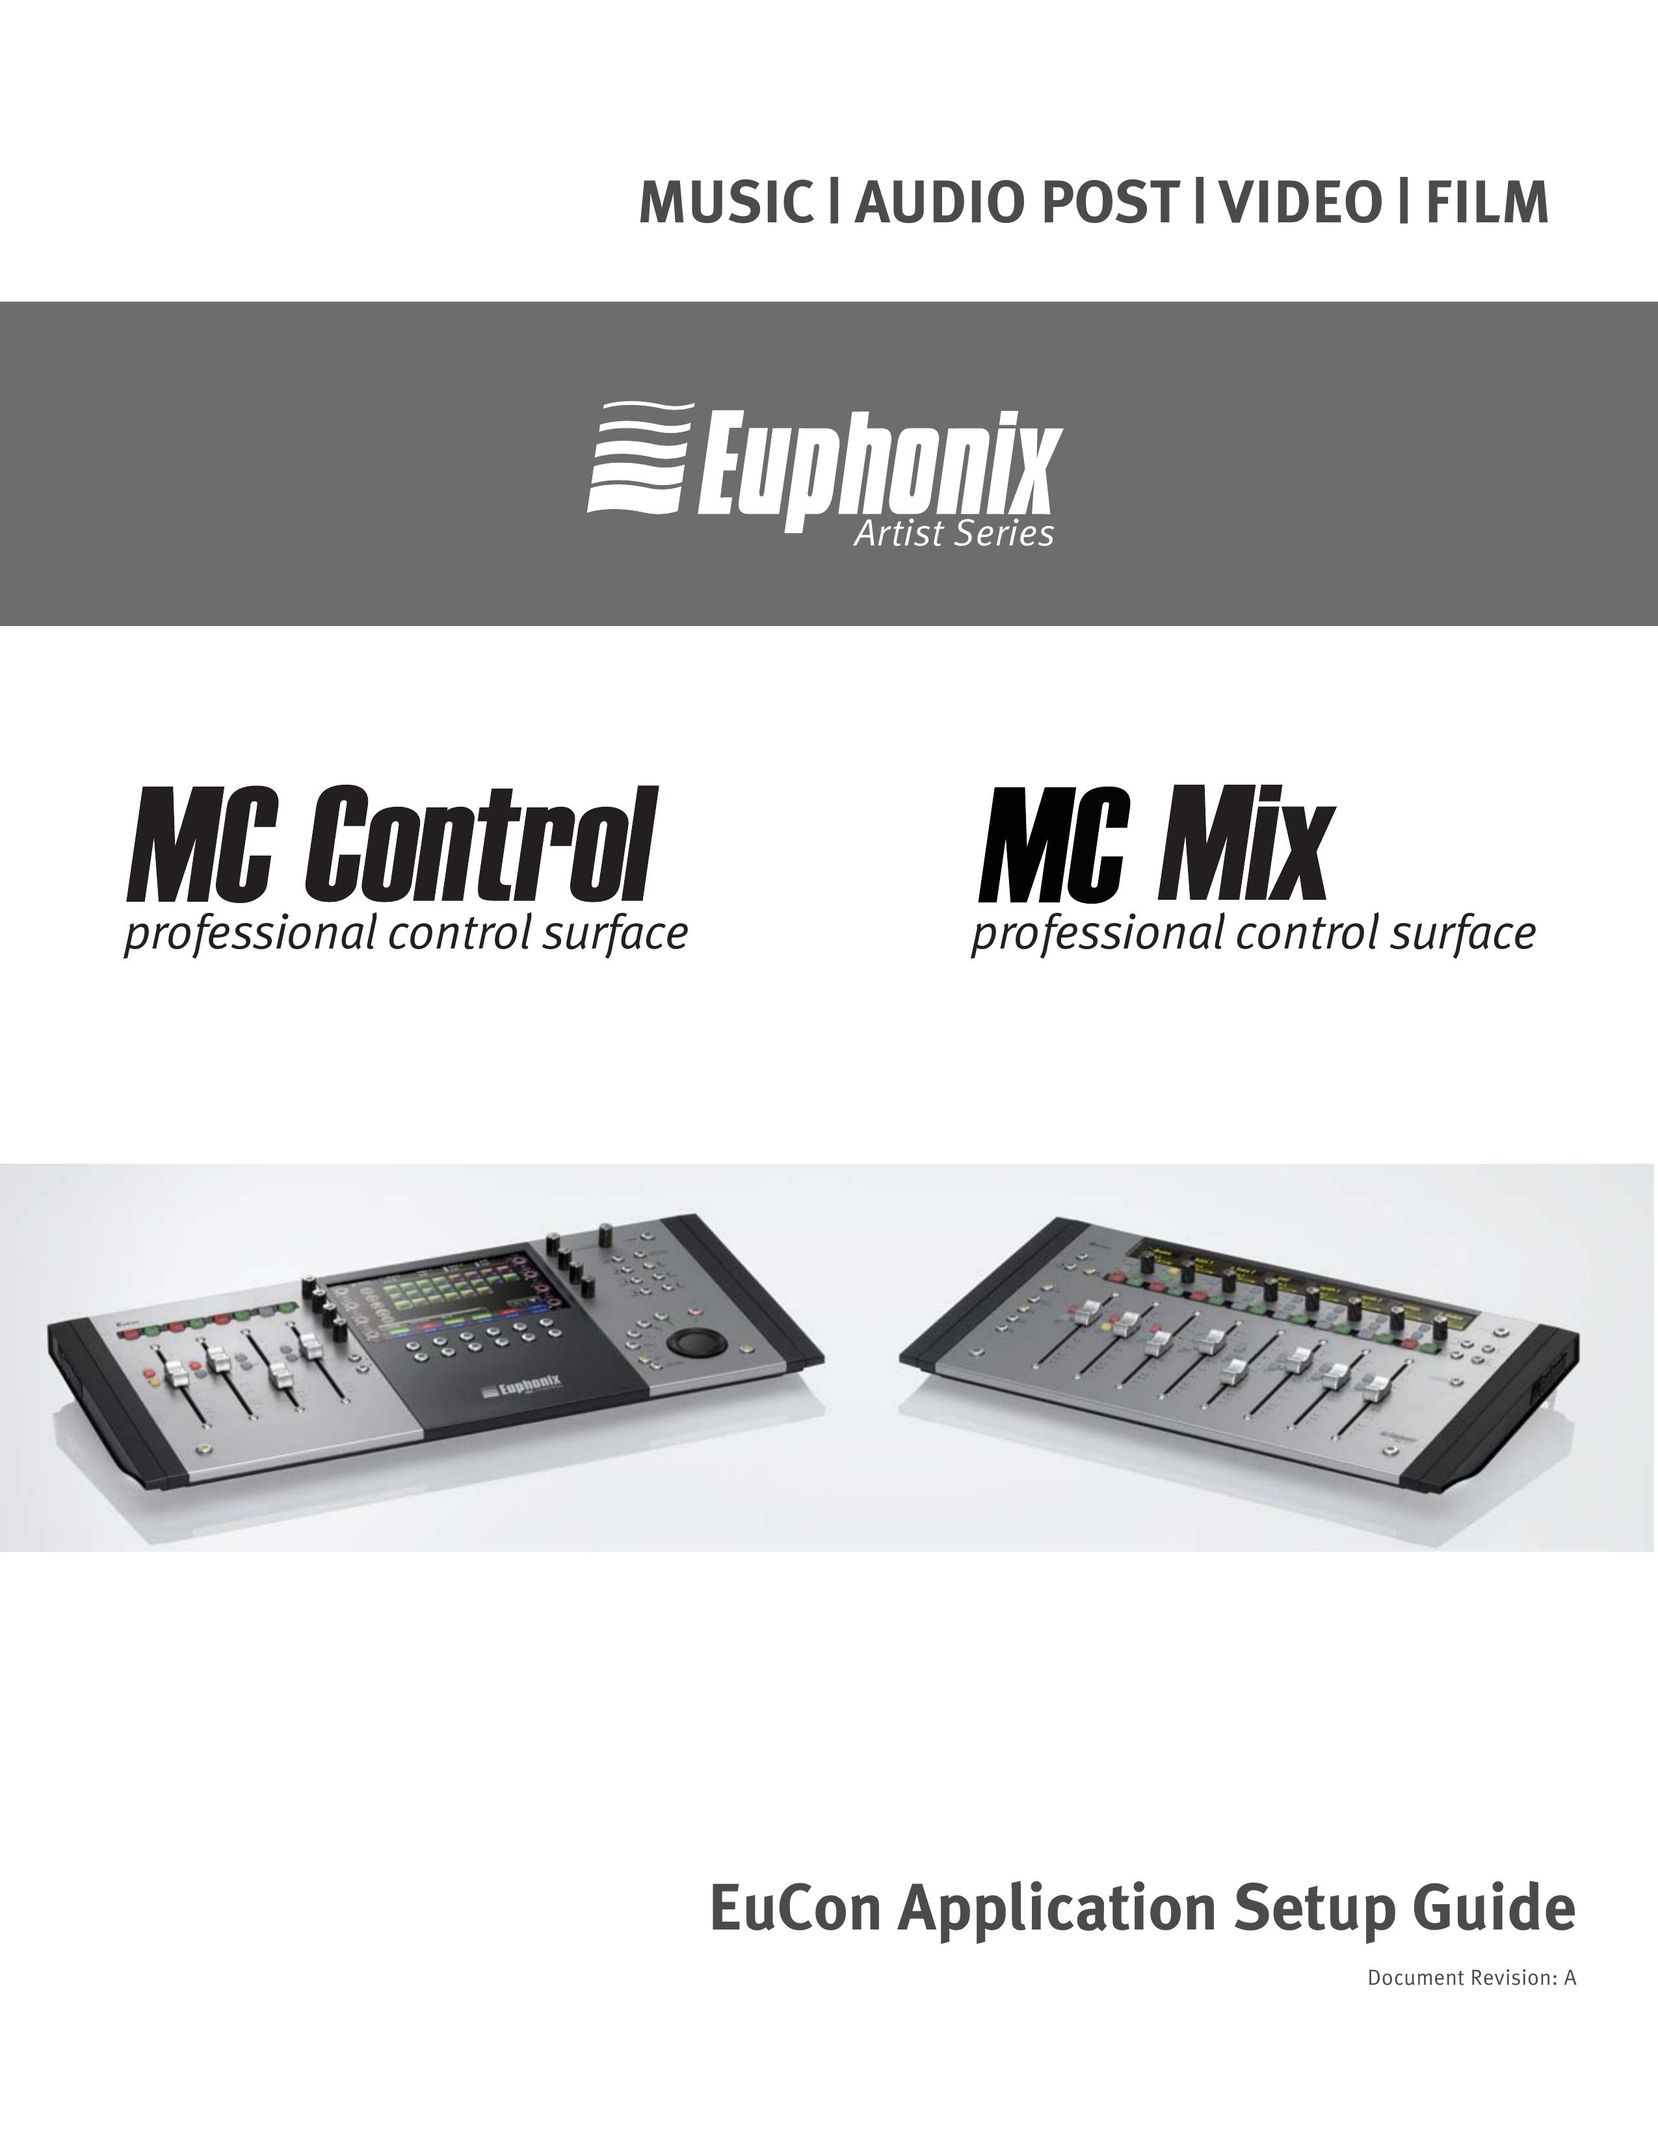 Euphonix MC Mix Video Game Controller User Manual